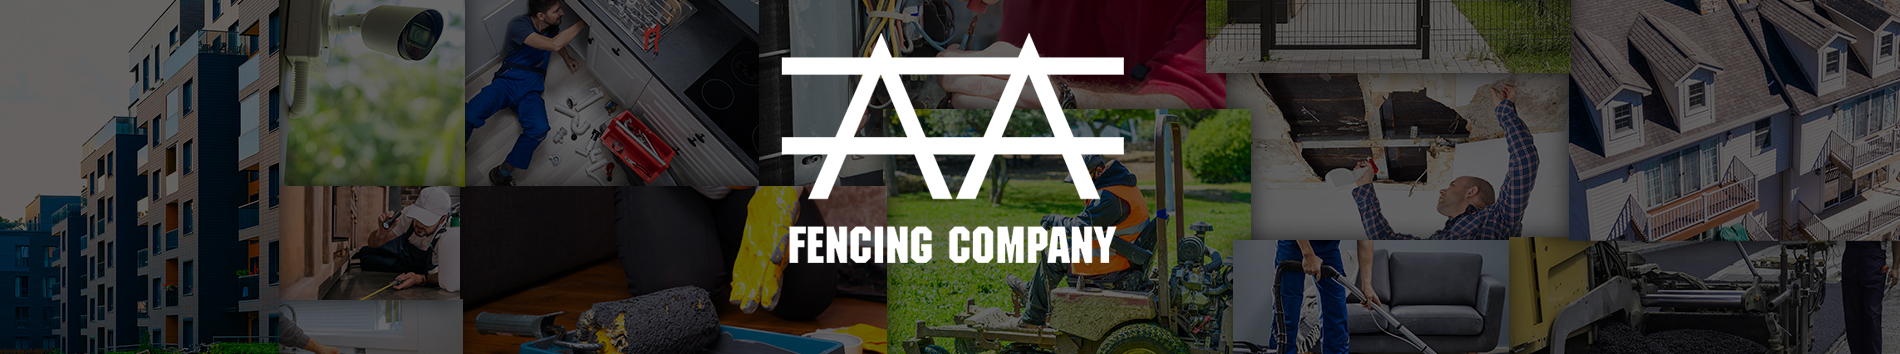 AA Fencing Company